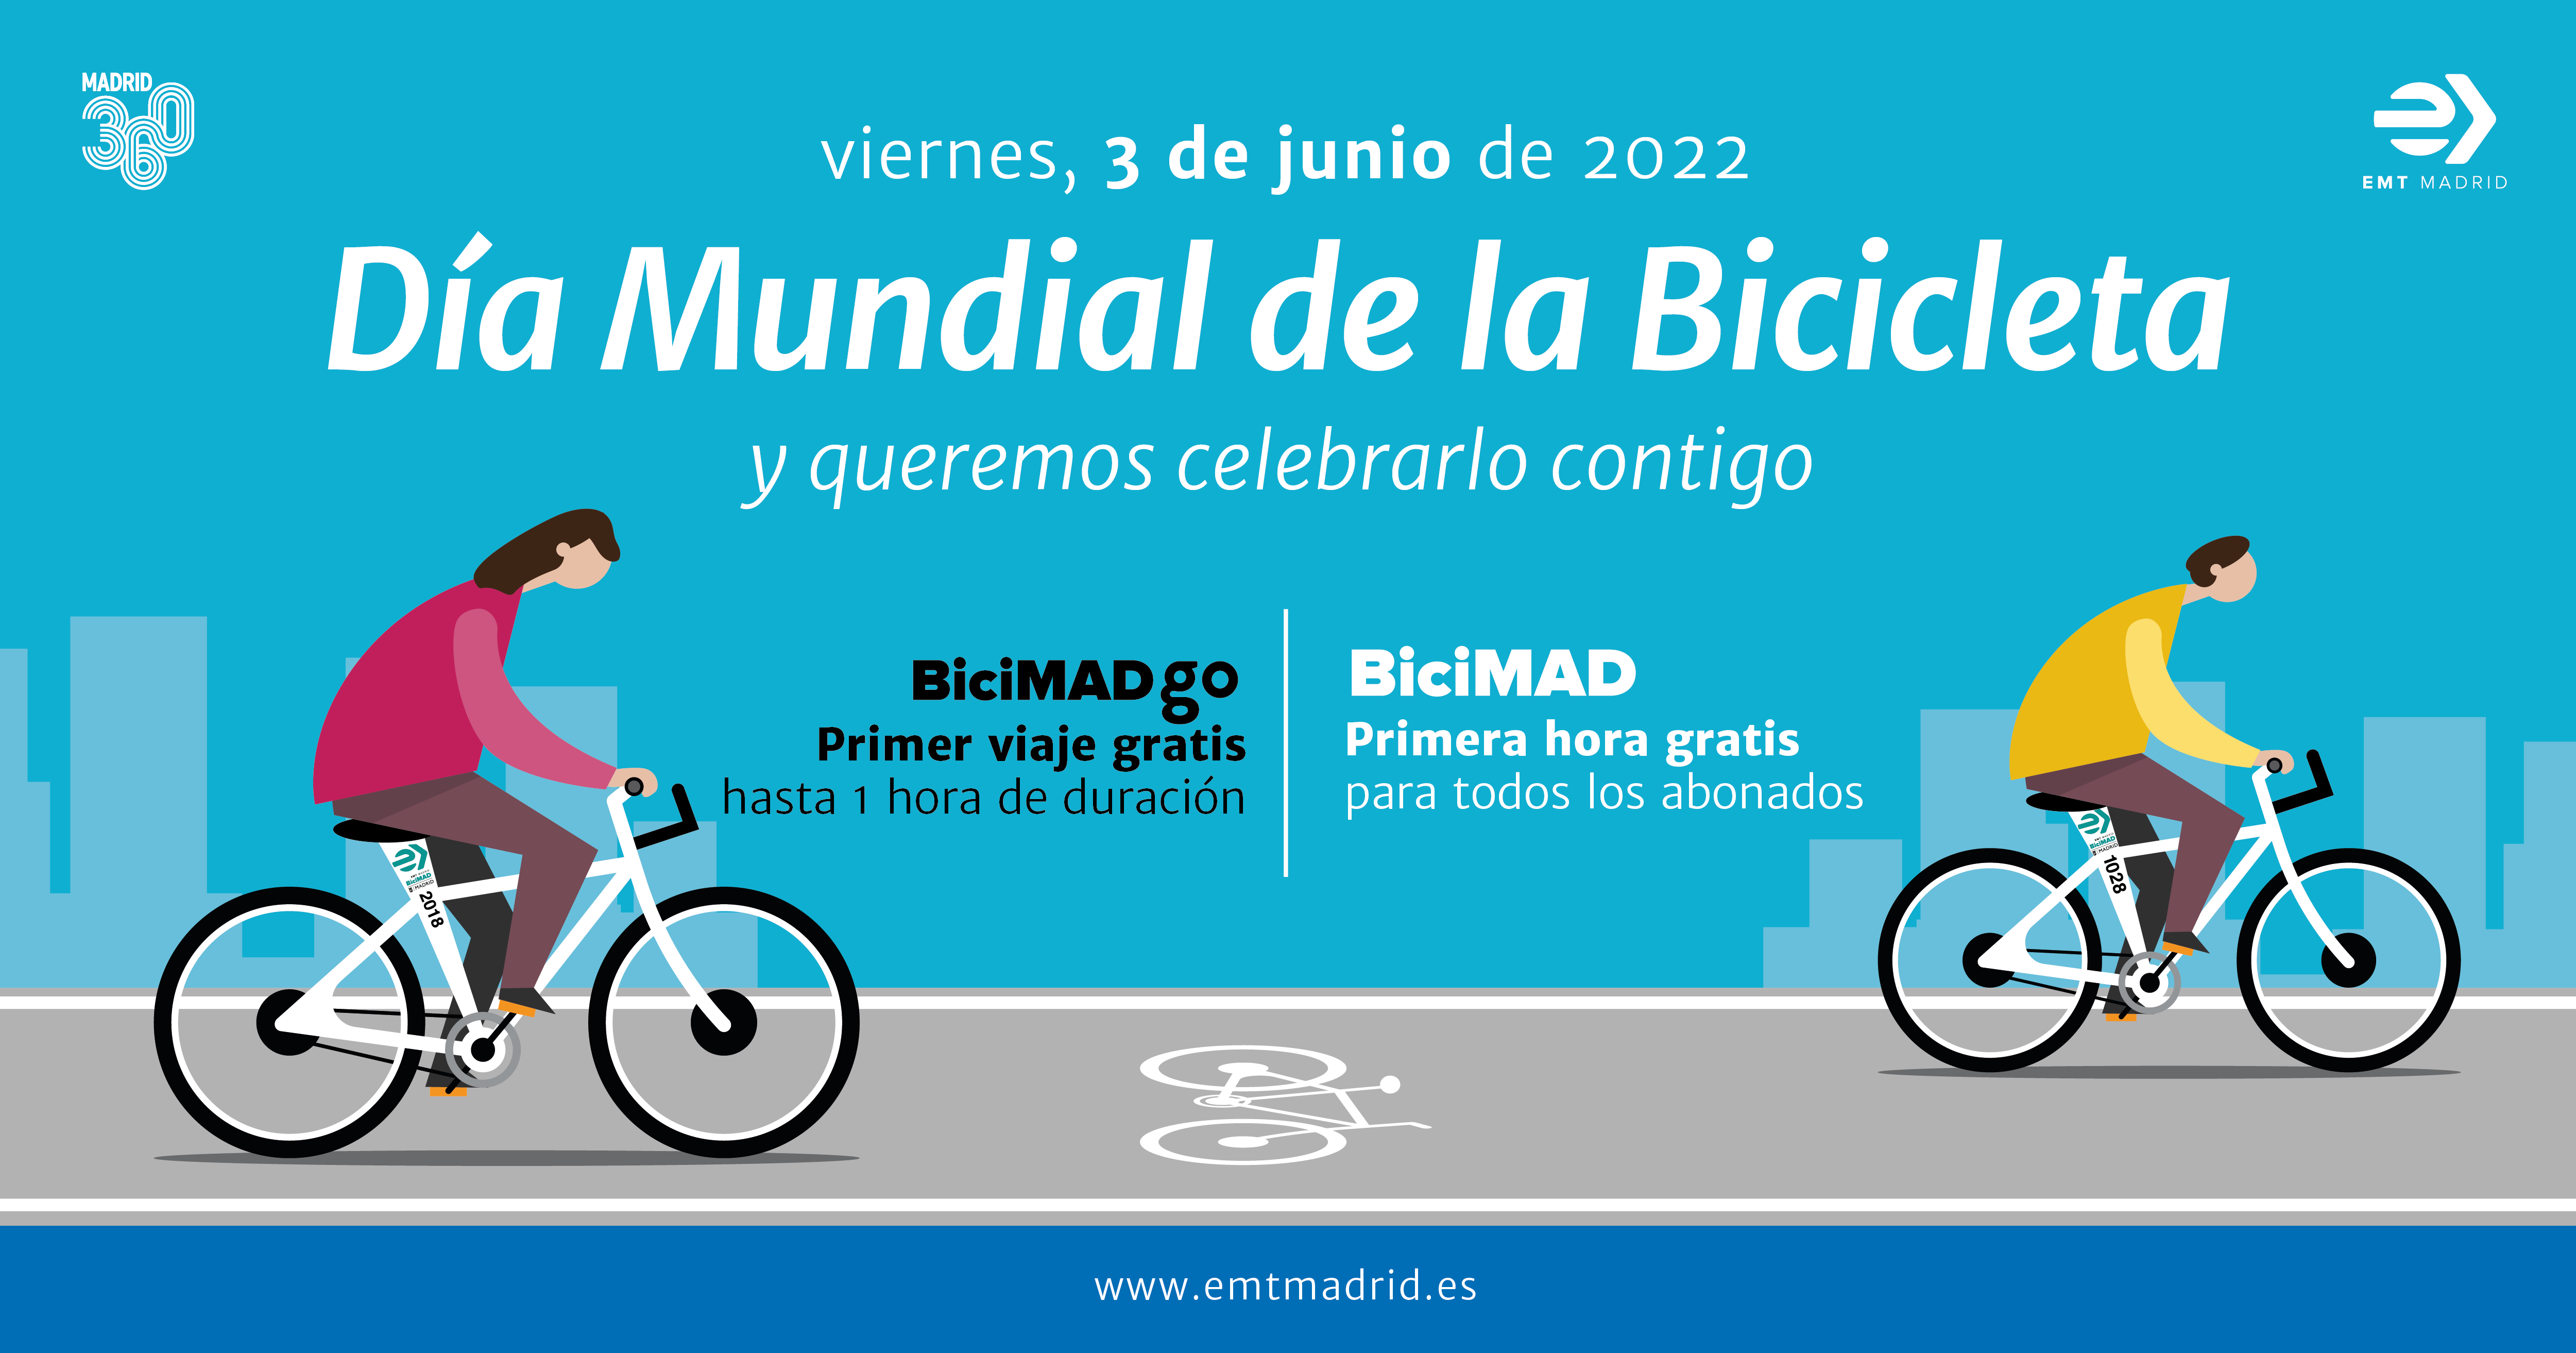 El Ayuntamiento regala una hora de BiciMAD y BiciMAD Go a todos los usuarios